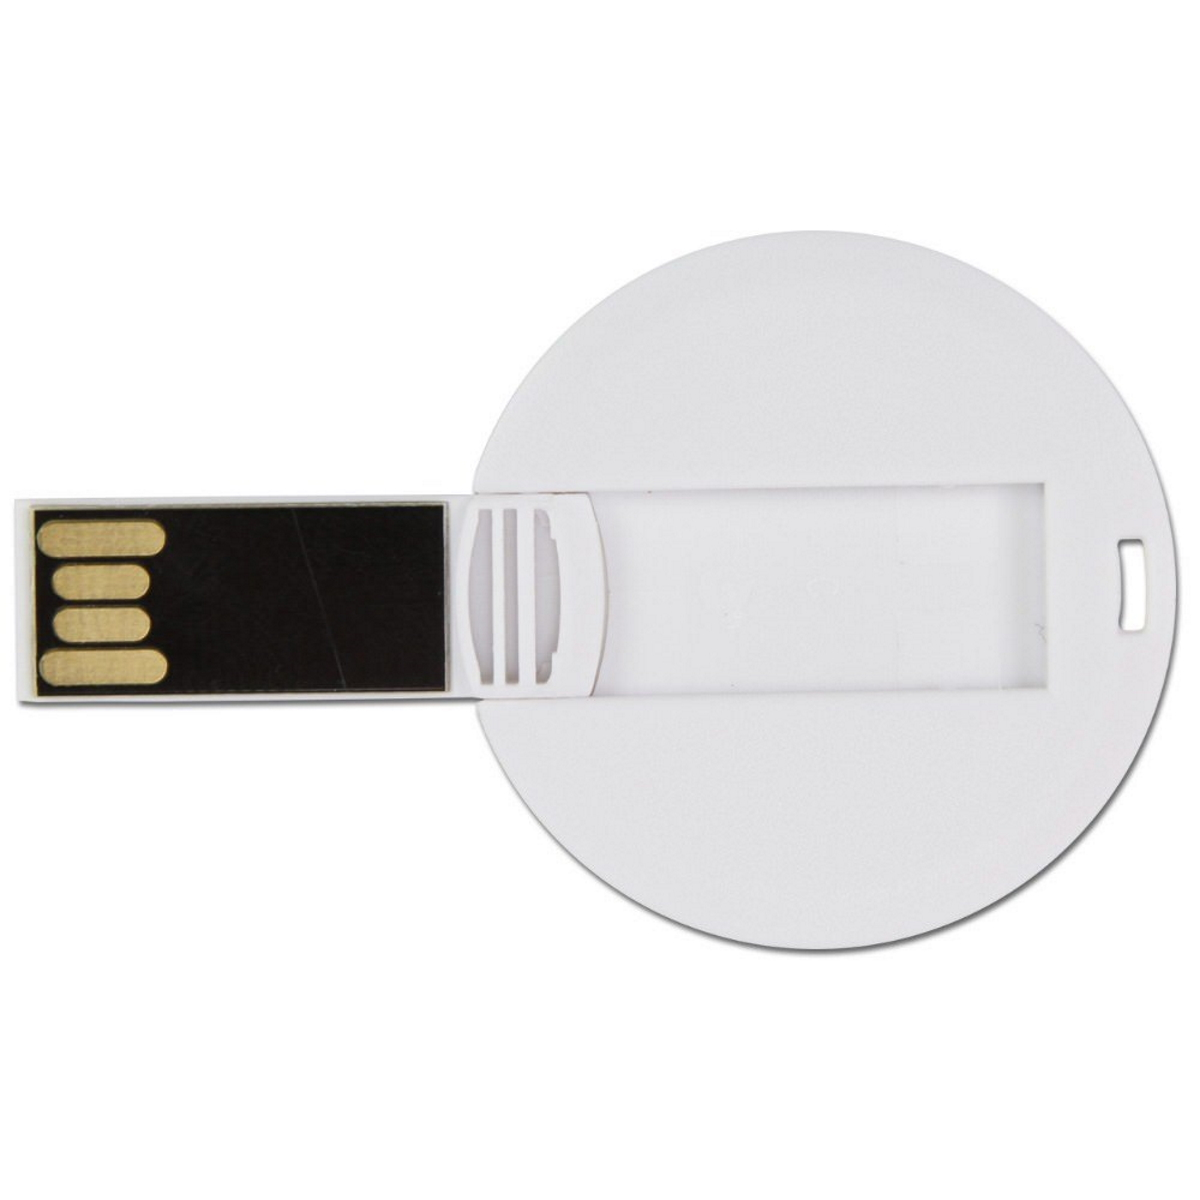 USB GERMANY ® DISC USB-Stick (Weiß, 1 GB)